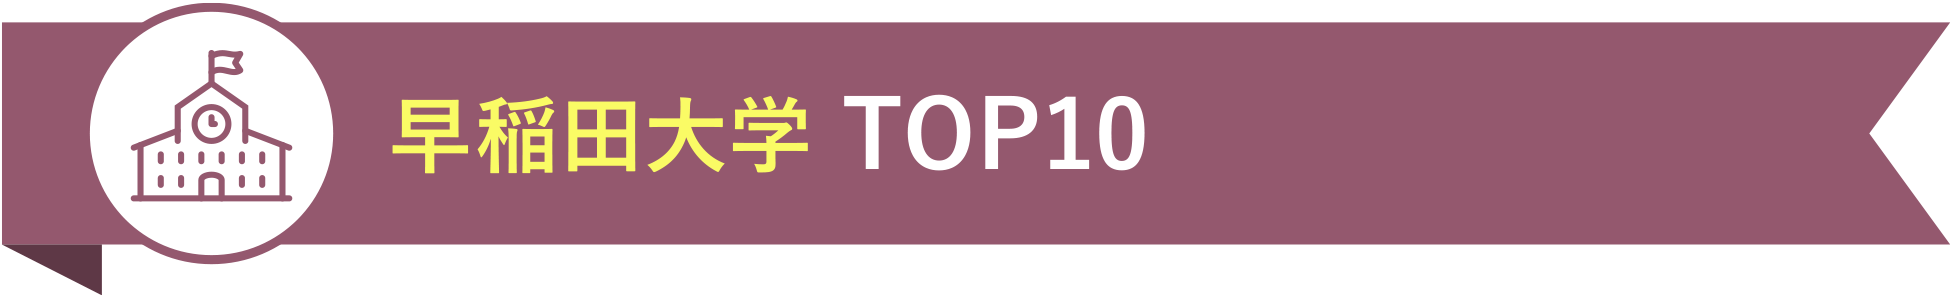 早稲田大学 TOP10